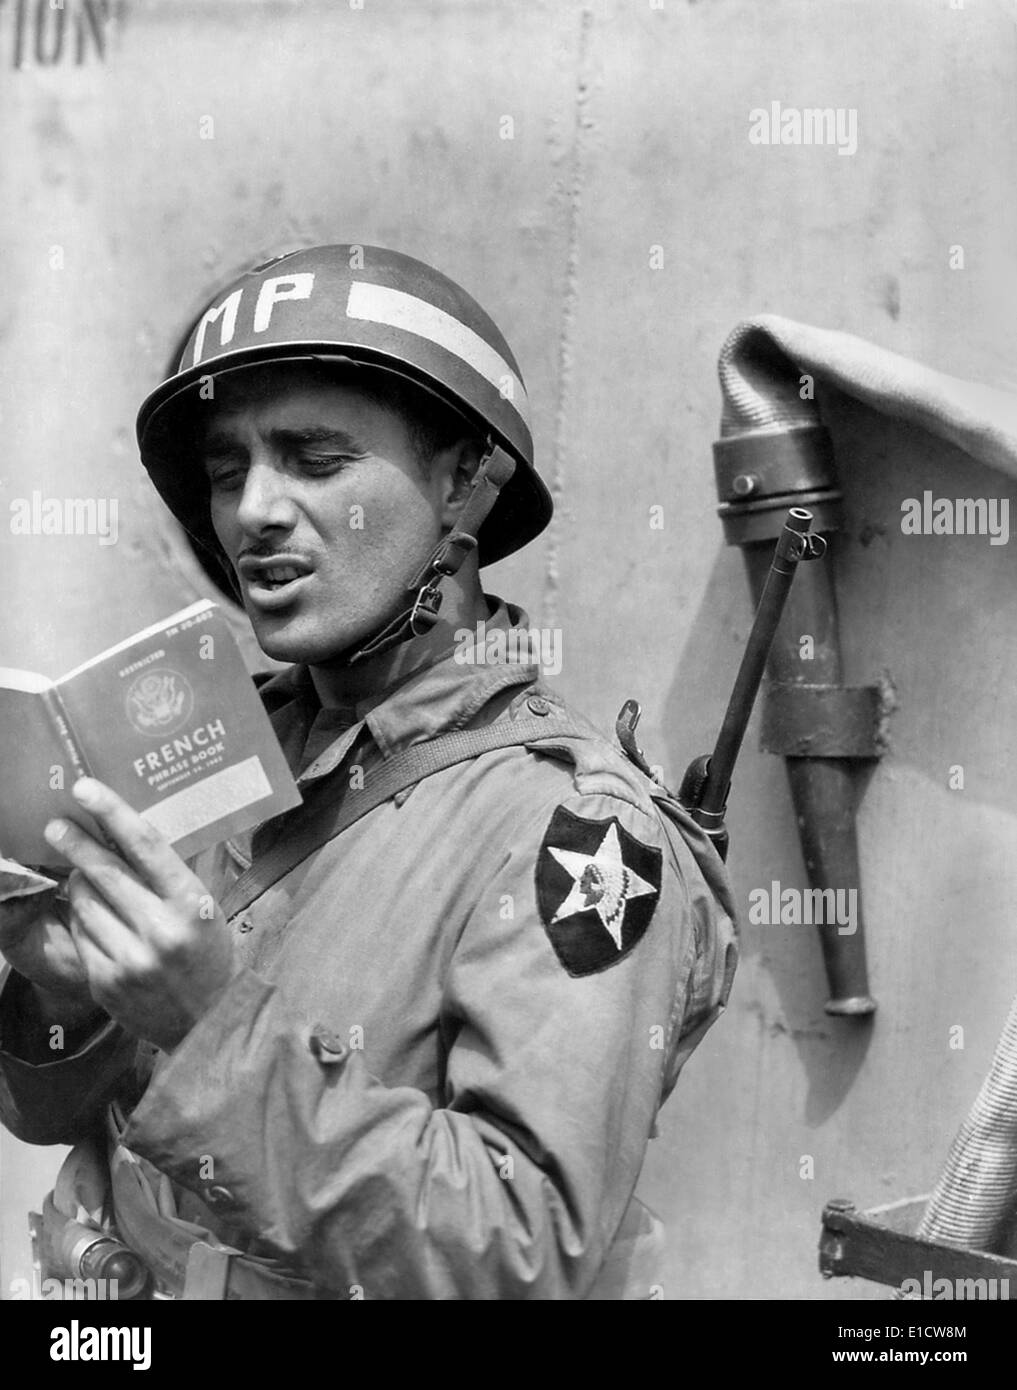 L'ARMÉE AMÉRICAINE MP (Police militaire) pratiques français sur un navire pour l'emmener en Normandie. Le 15 juin 1944. La Seconde Guerre mondiale 2. (BSLOC 2014 2 77) Banque D'Images